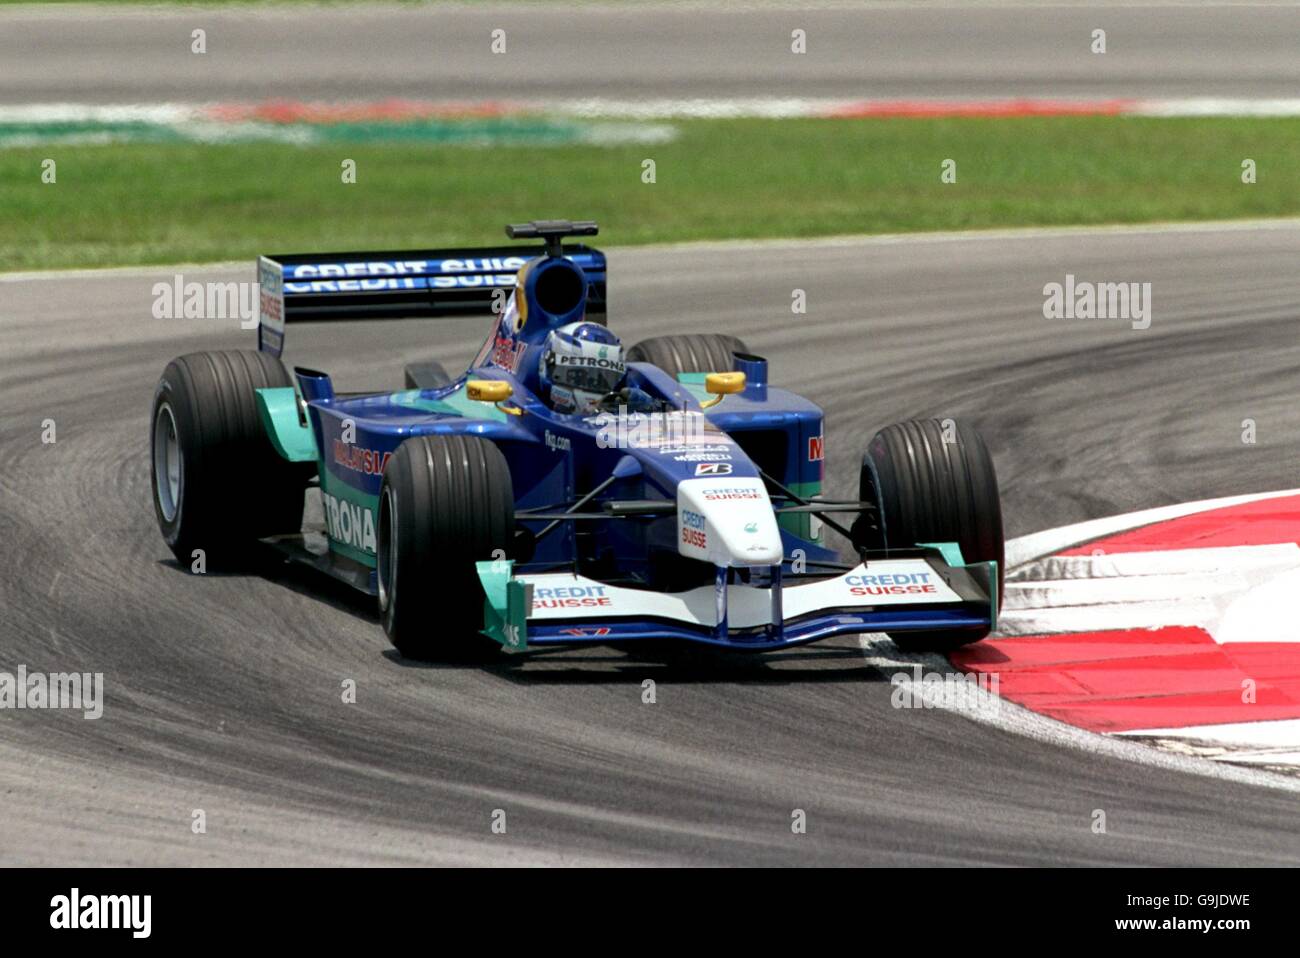 Motorsport - Formel 1 - großer Preis von Malaysia - Vorschaustag. Kimi Räikkönen holt seine Räder beim Training für den Großen Preis von Malaysia aus der Reihe Stockfoto